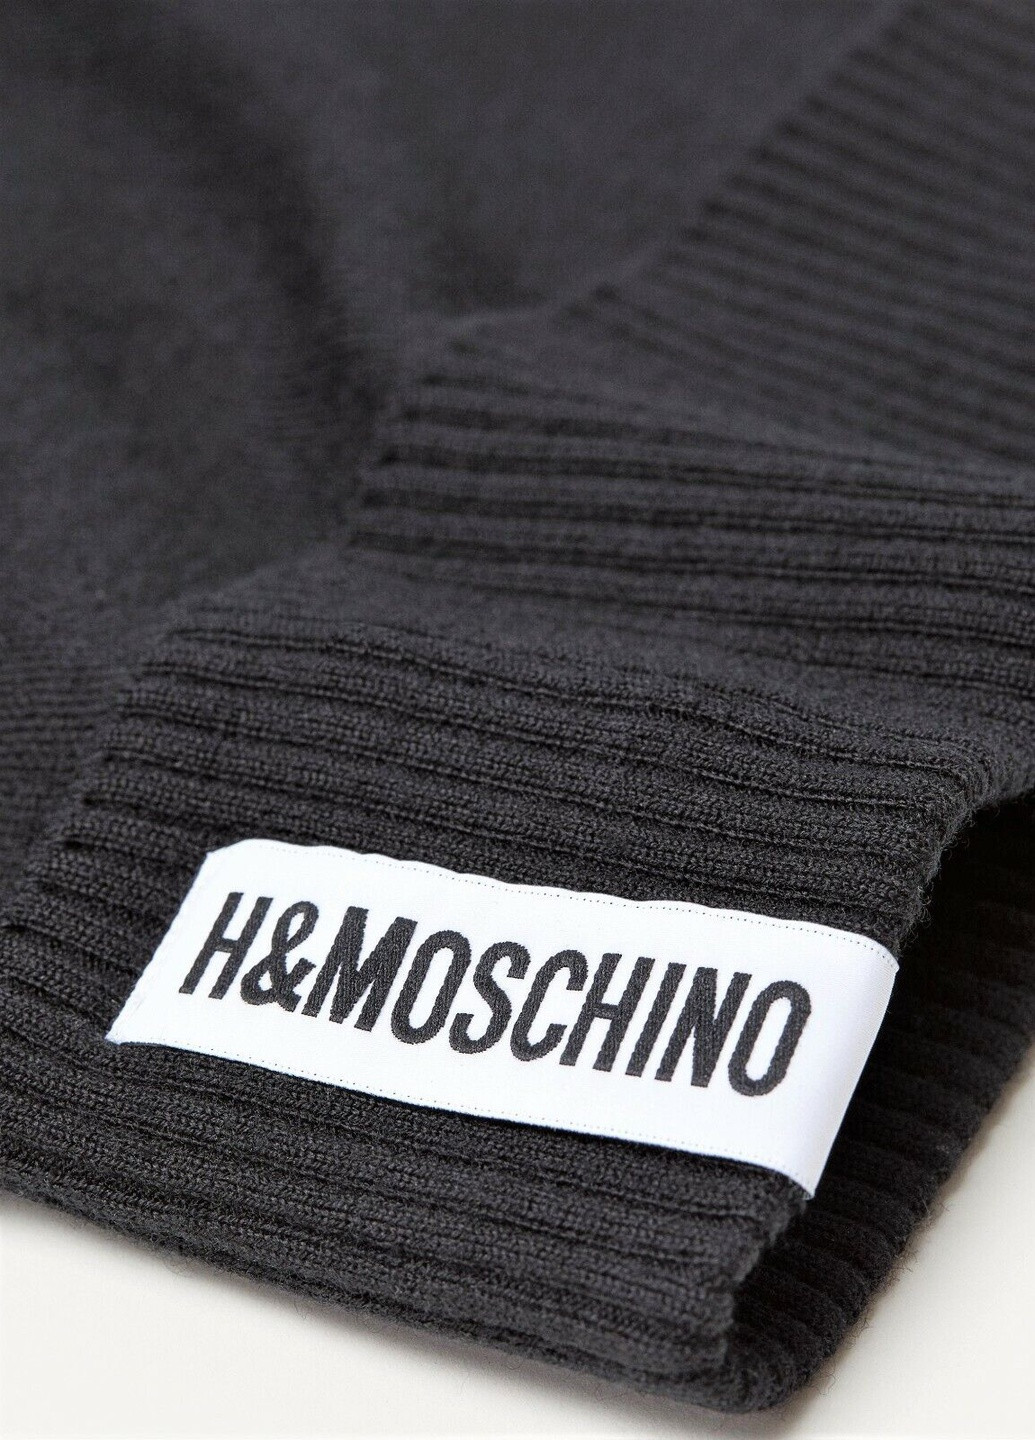 Шапка H&M однотонная чёрная кэжуал шерсть